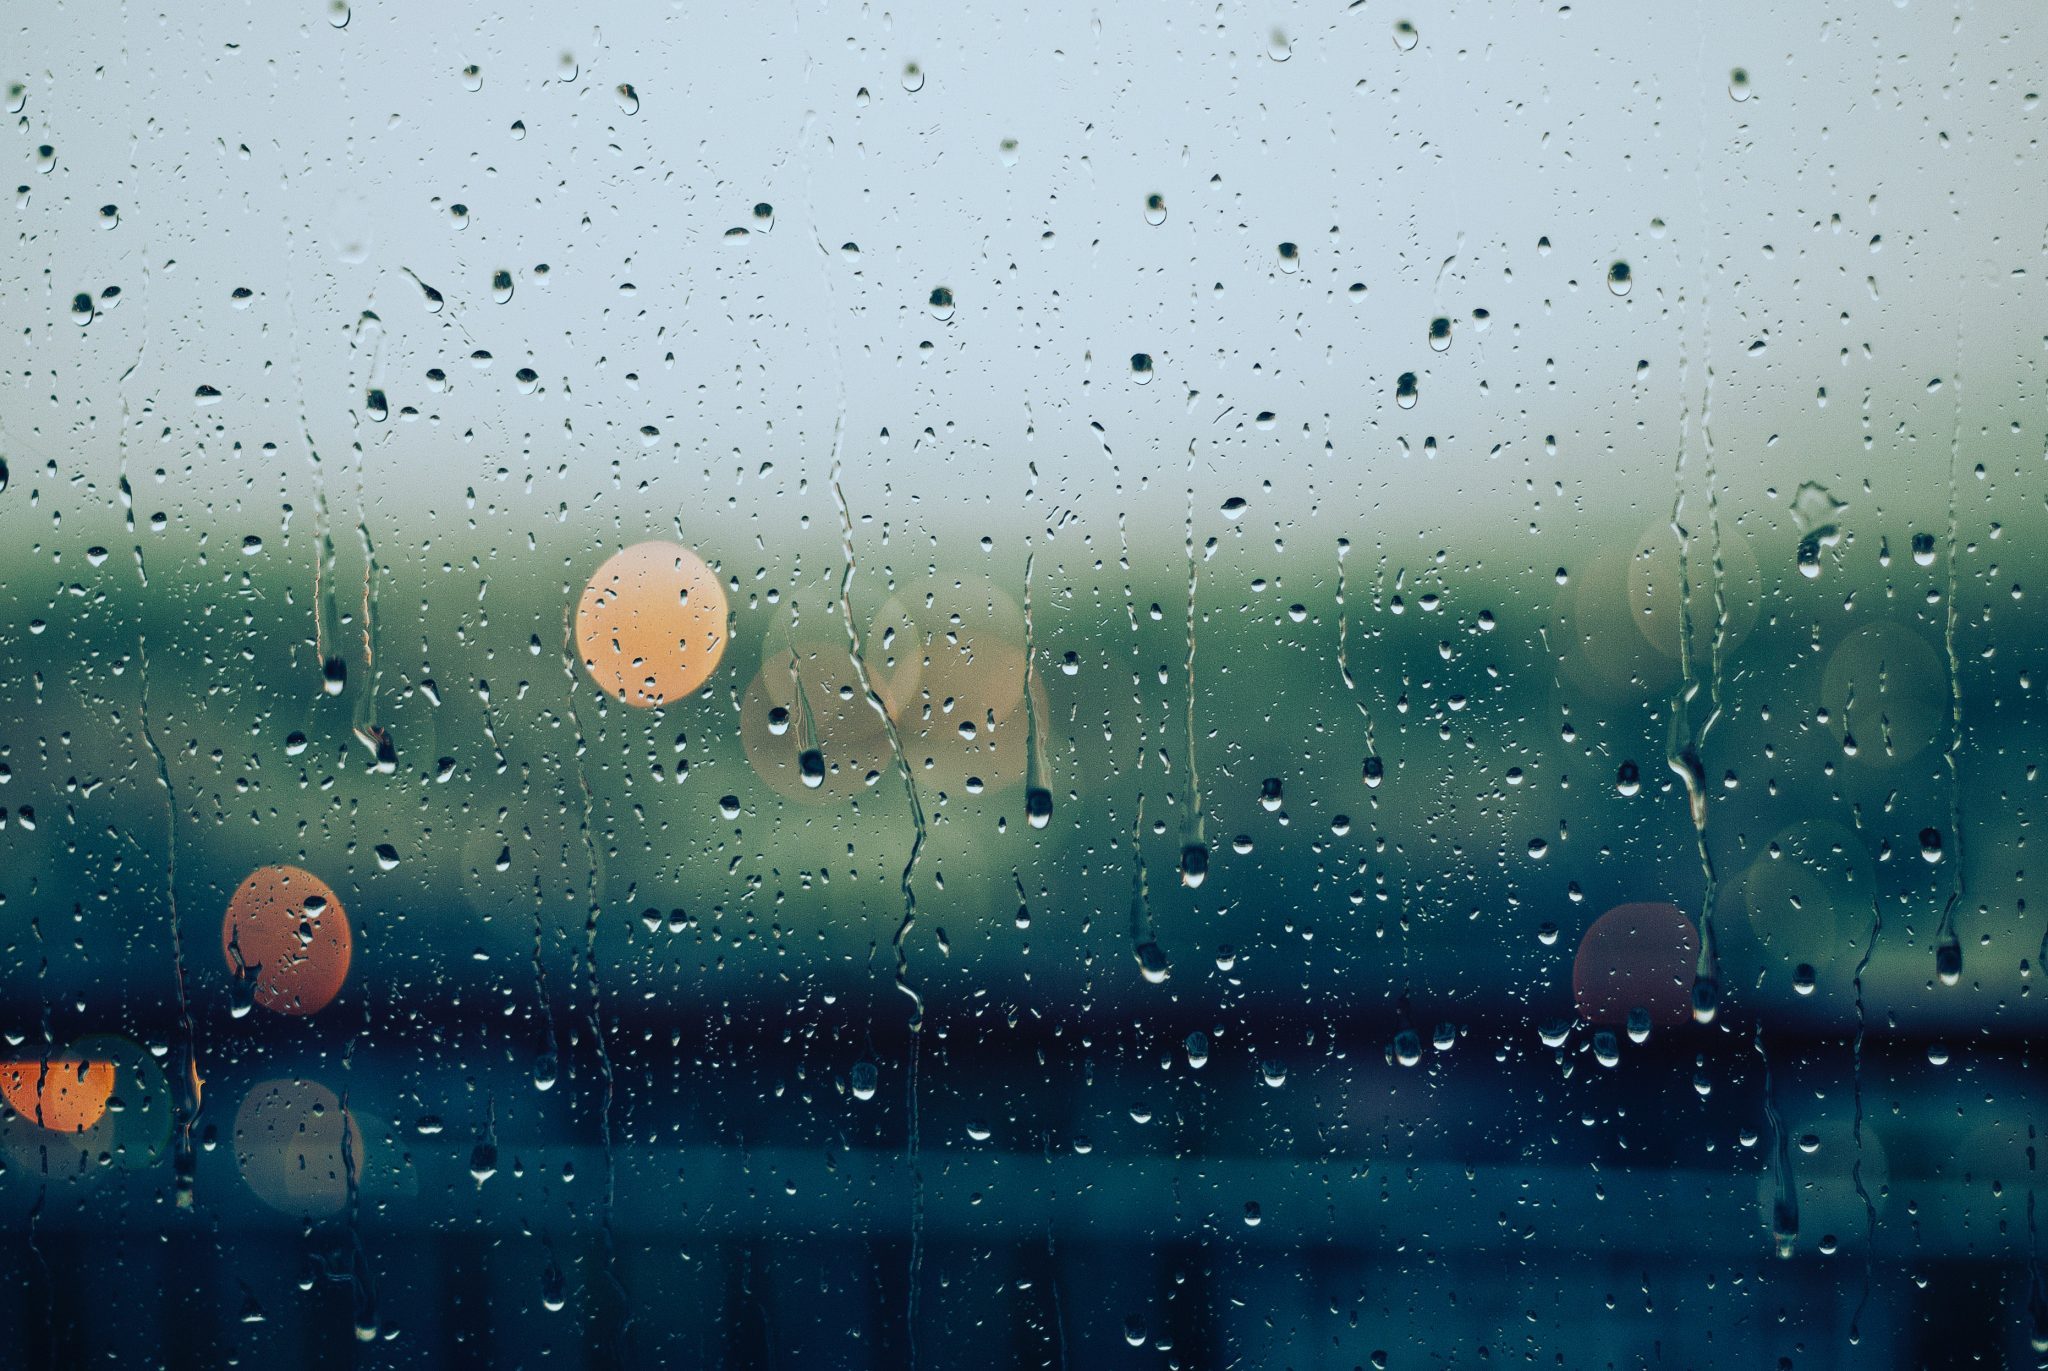 hình nền mưa qua khung cửa kính đẹp